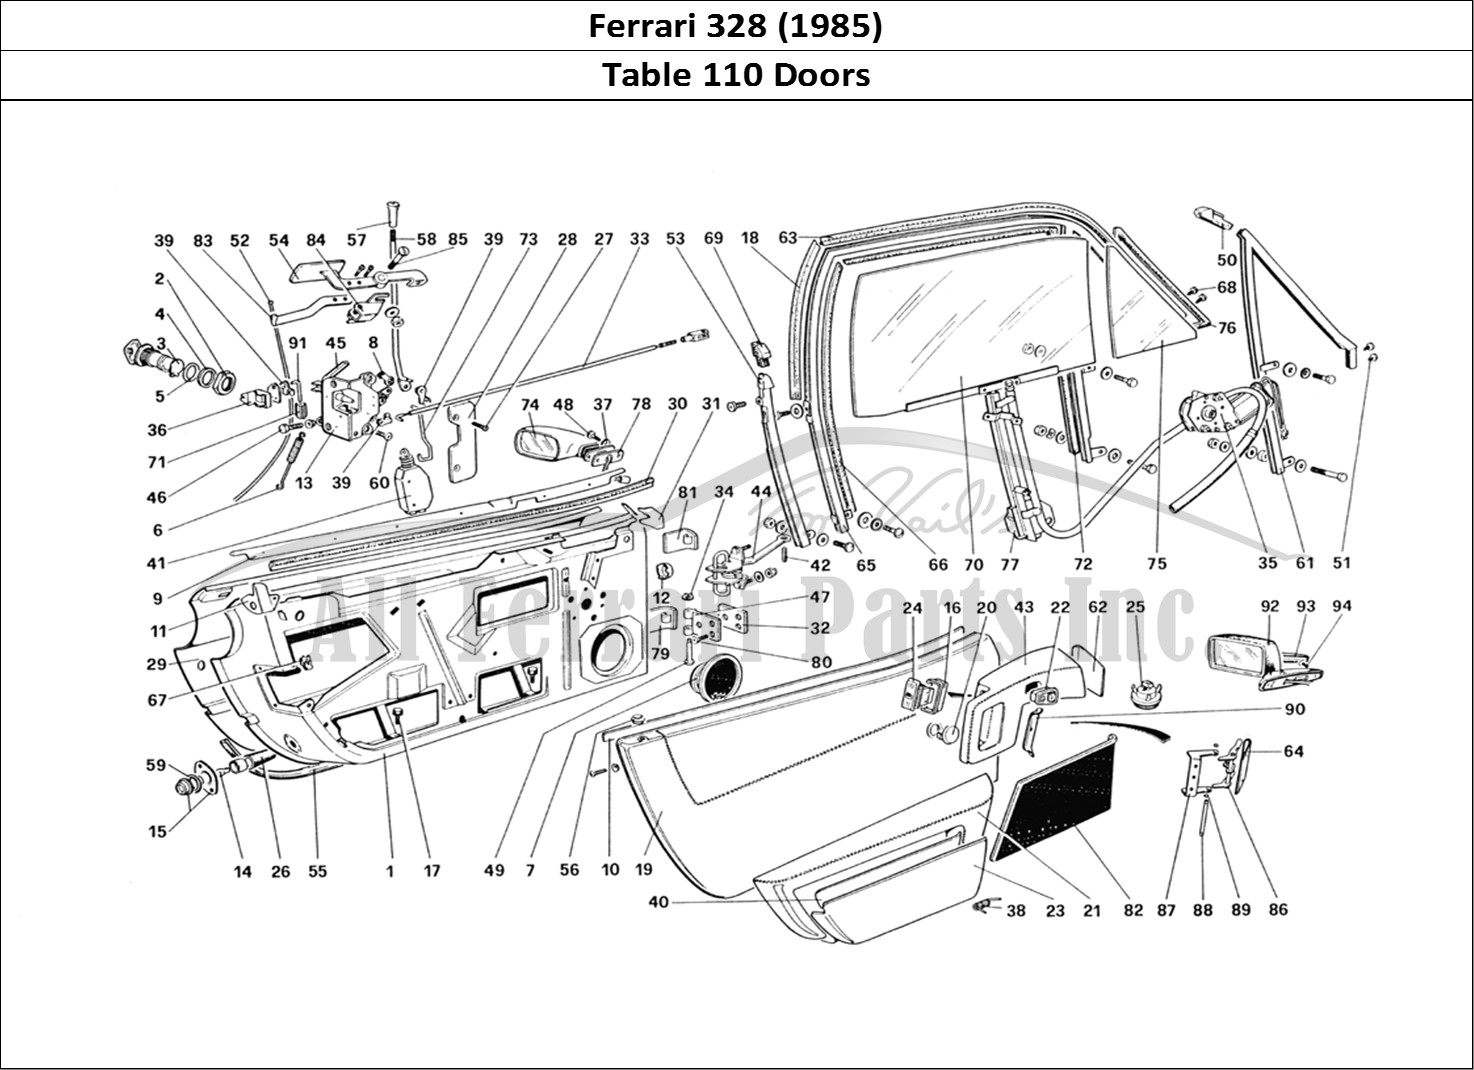 Ferrari Parts Ferrari 328 (1985) Page 110 Doors